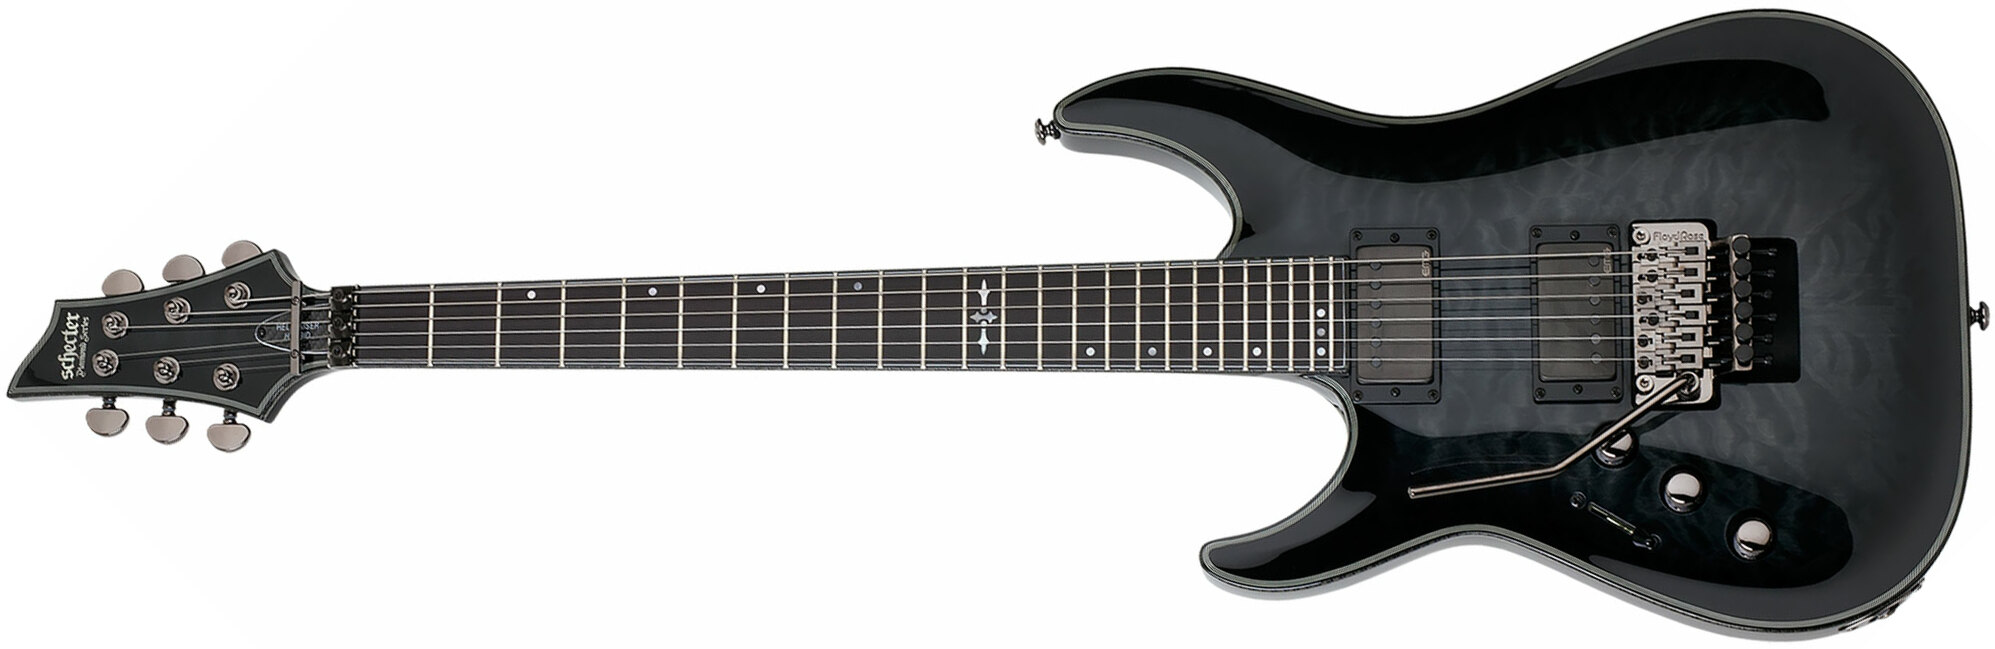 Schecter C-1 Fr Hellraiser Hybrid Lh Gaucher 2h Emg Eb - Trans. Black Burst - Guitarra electrica para zurdos - Main picture